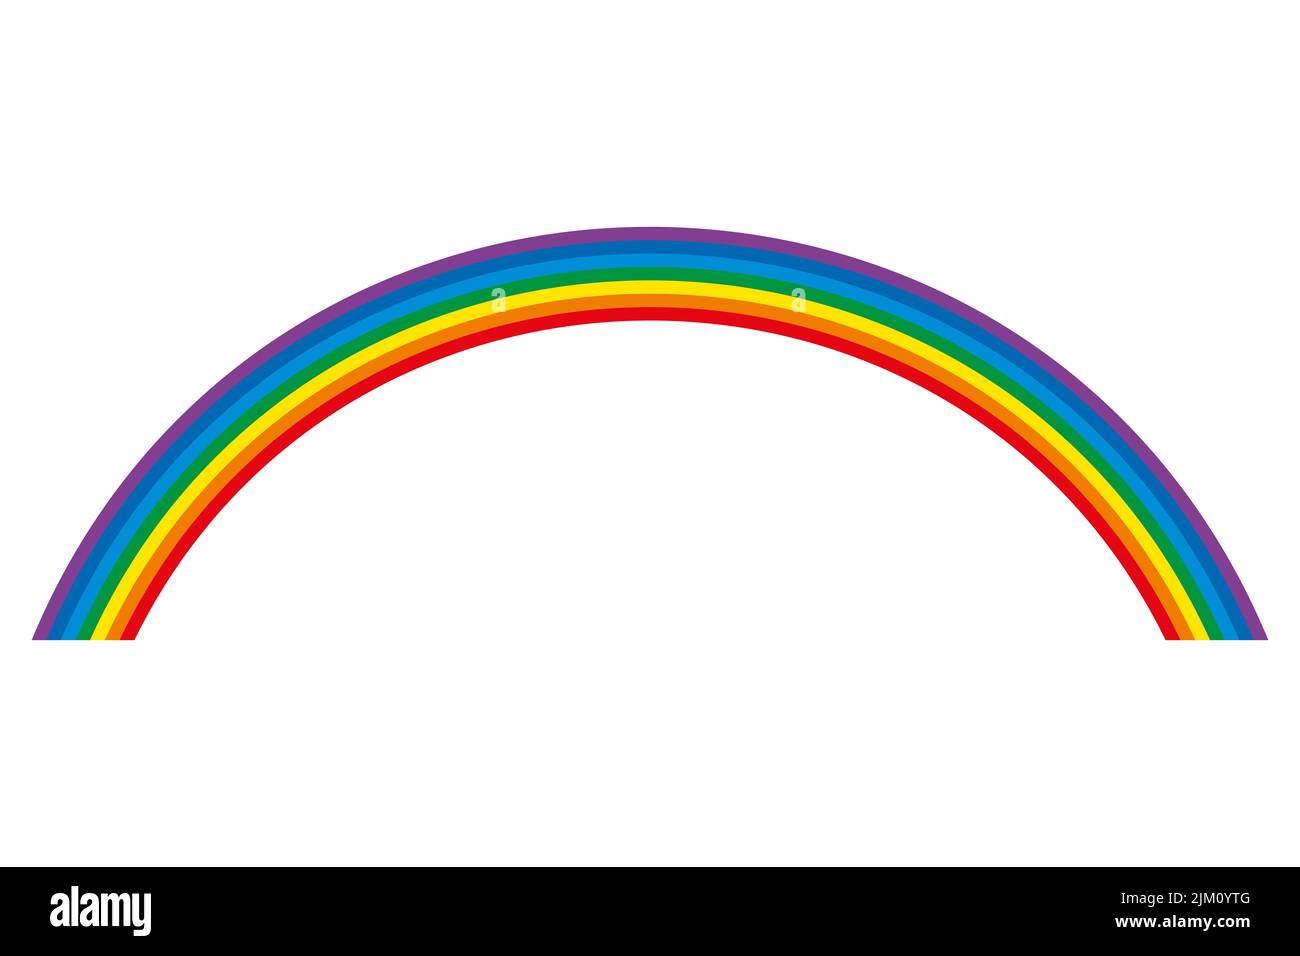 Arc-en-ciel, arc circulaire multicolore. 7 barres de couleurs pliées représentant le spectre de la lumière visible. Rouge, orange, jaune, vert, cyan, bleu, violet. Banque D'Images